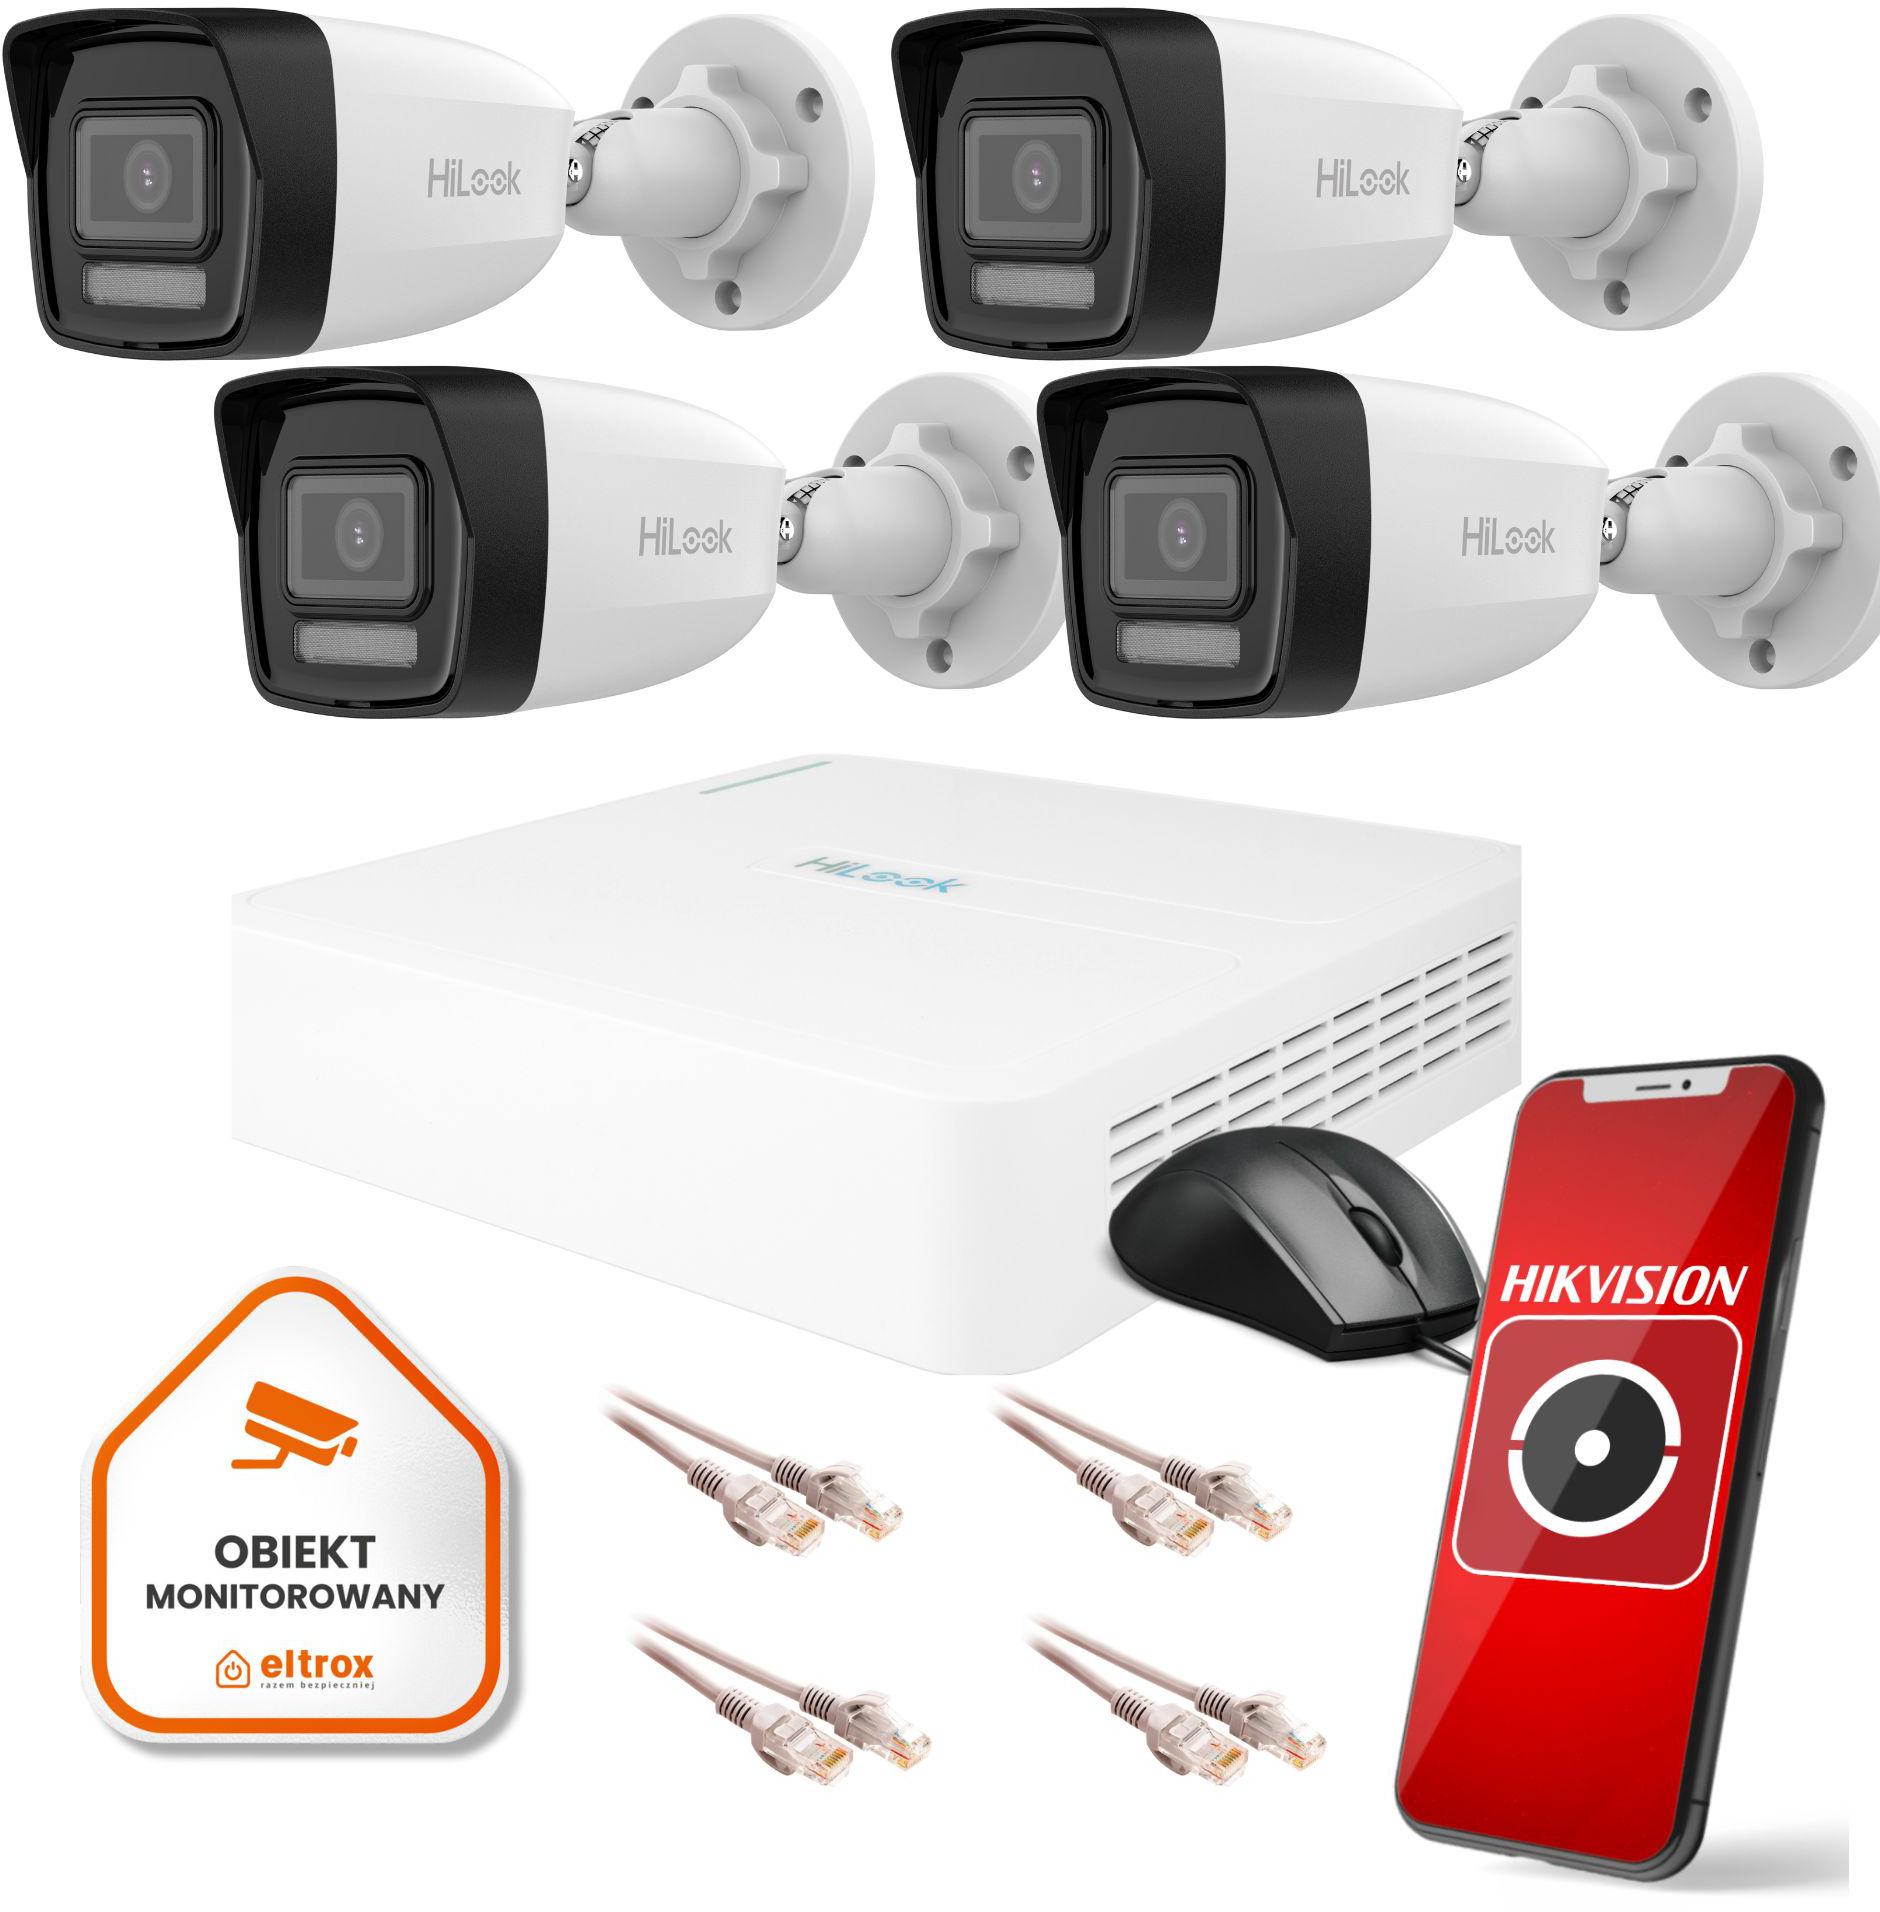 Zestaw monitoringu Hilook by Hikvision 4 kamer tuby IP zewnętrzne 4MPx gwarancją bezpieczeństwa Twojego domu